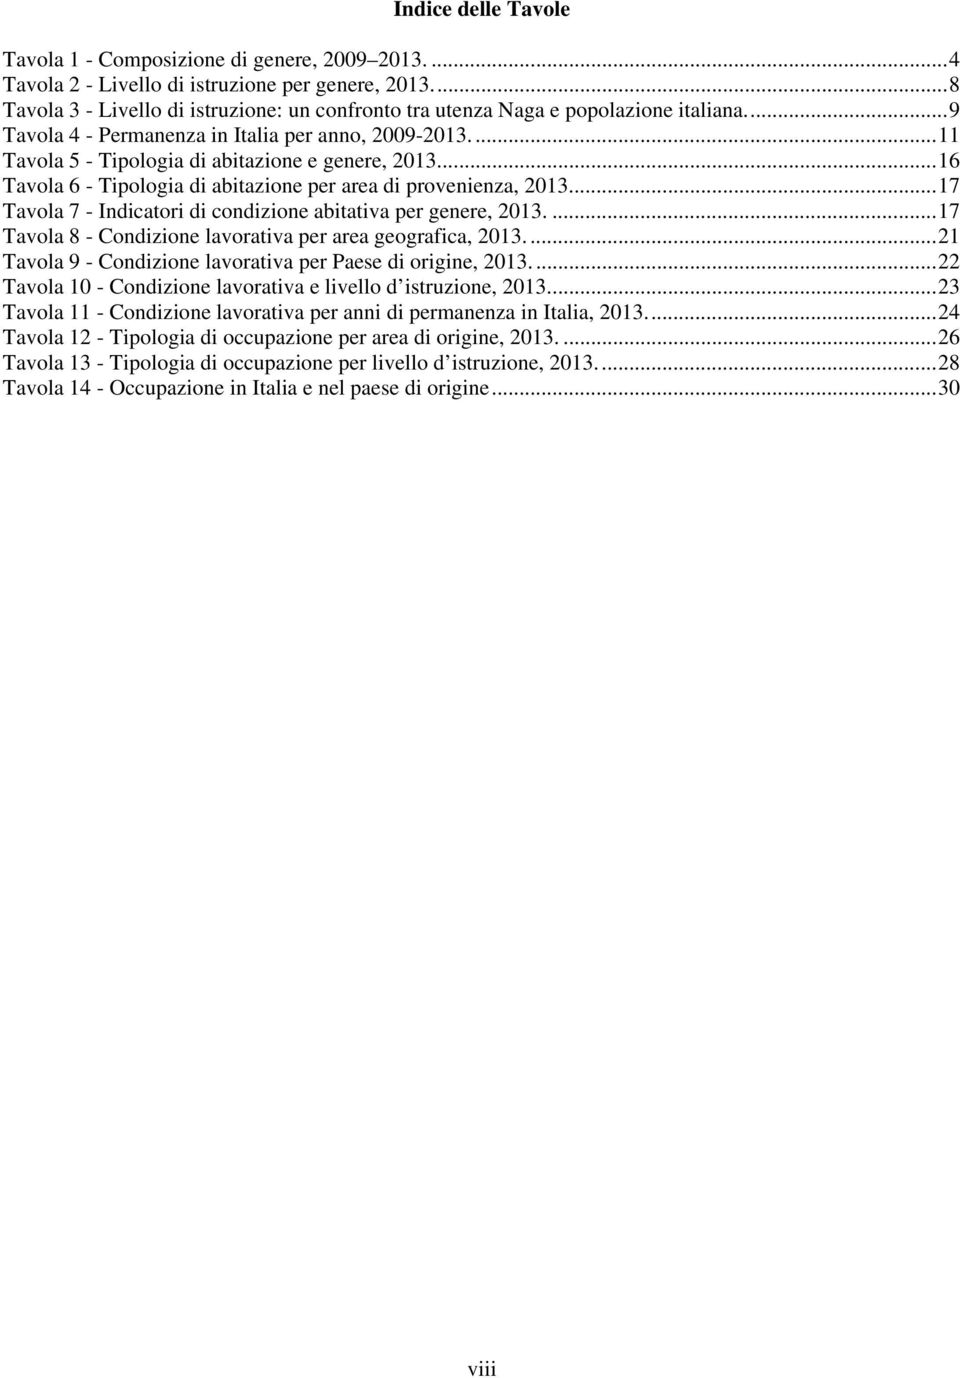 ... 11 Tavola 5 - Tipologia di abitazione e genere, 2013.... 16 Tavola 6 - Tipologia di abitazione per area di provenienza, 2013.... 17 Tavola 7 - Indicatori di condizione abitativa per genere, 2013.